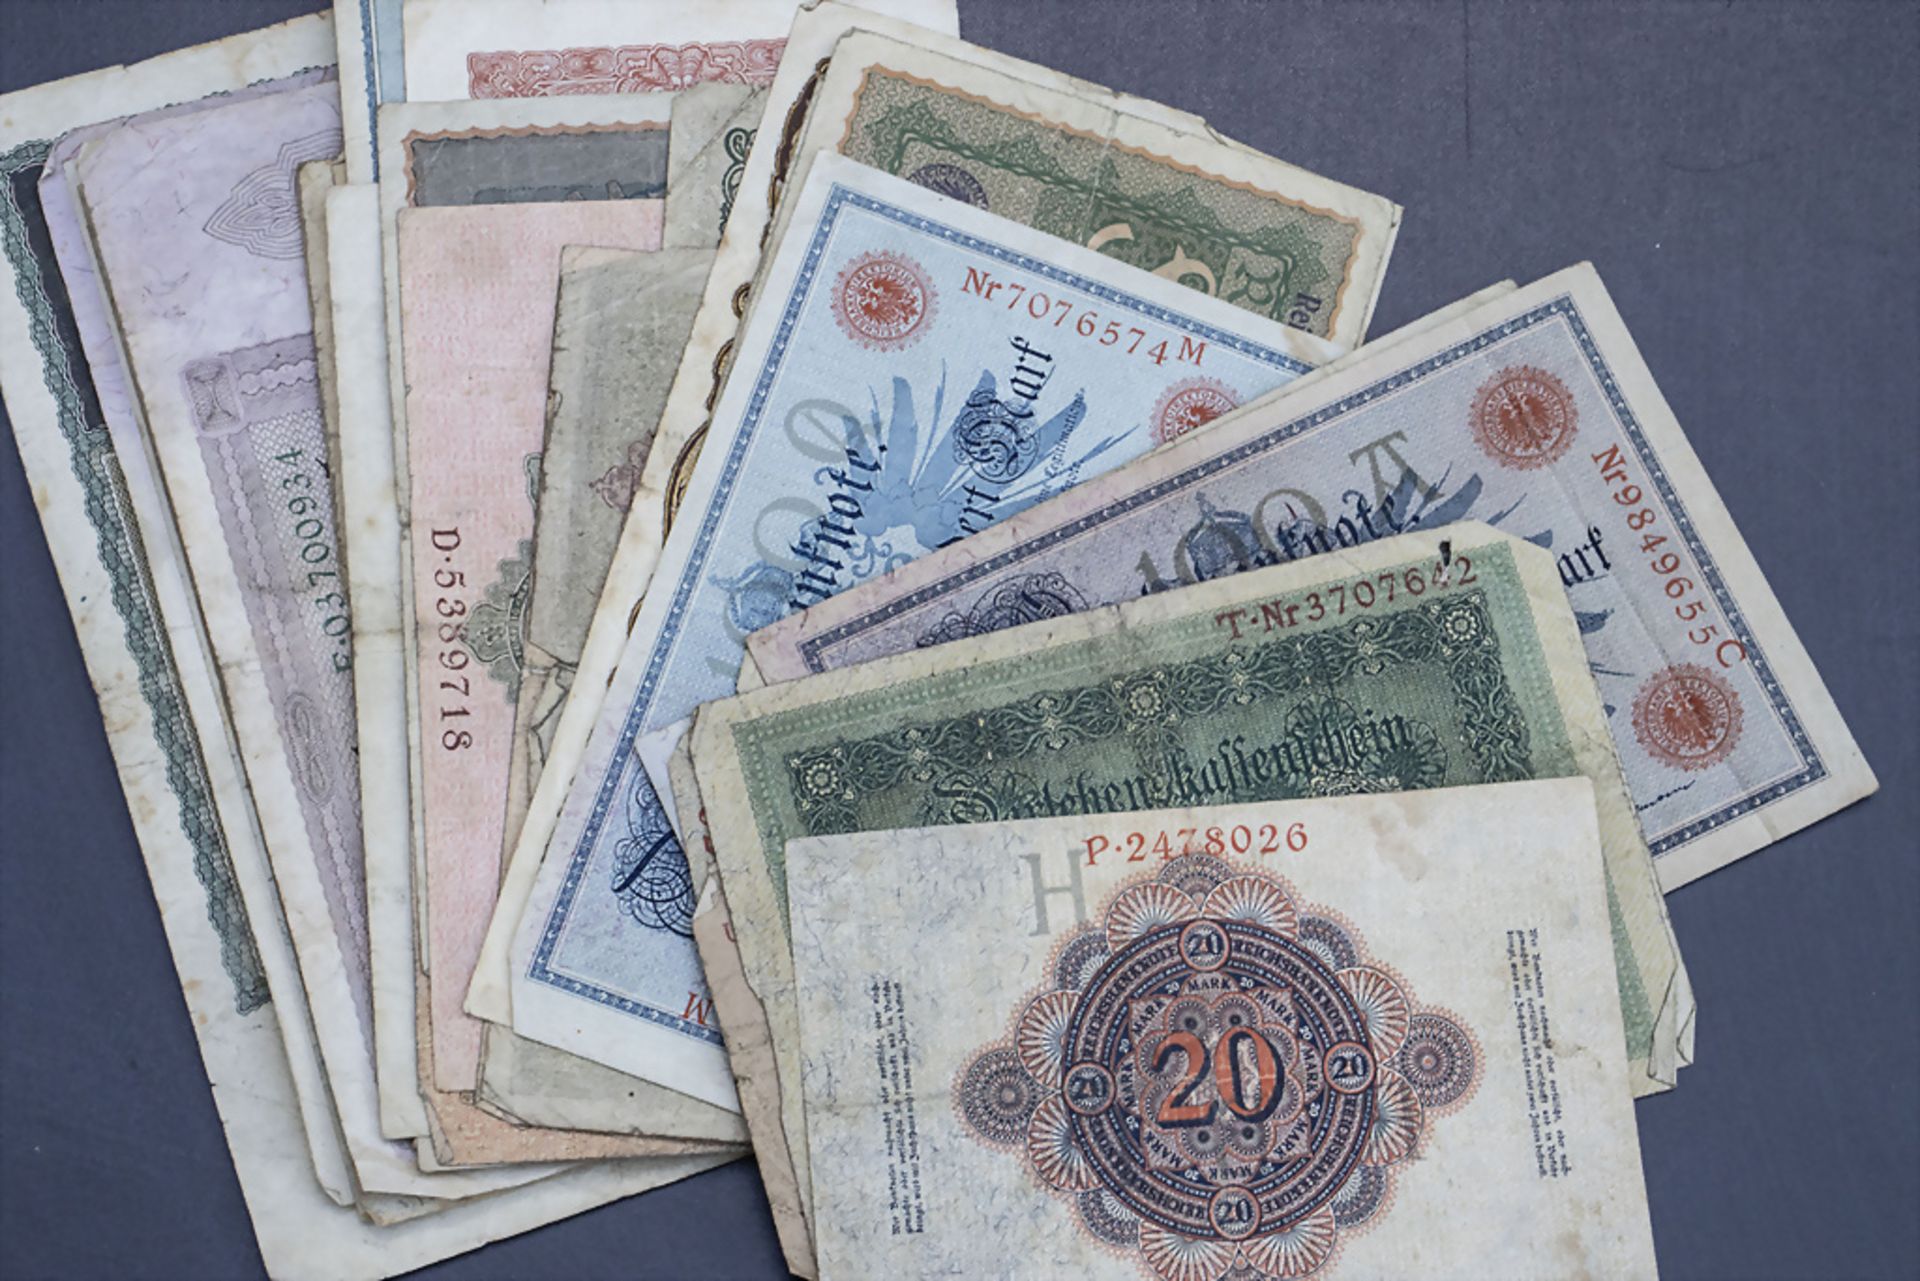 Sammlung deutscher Banknoten / A collection of German banknotes